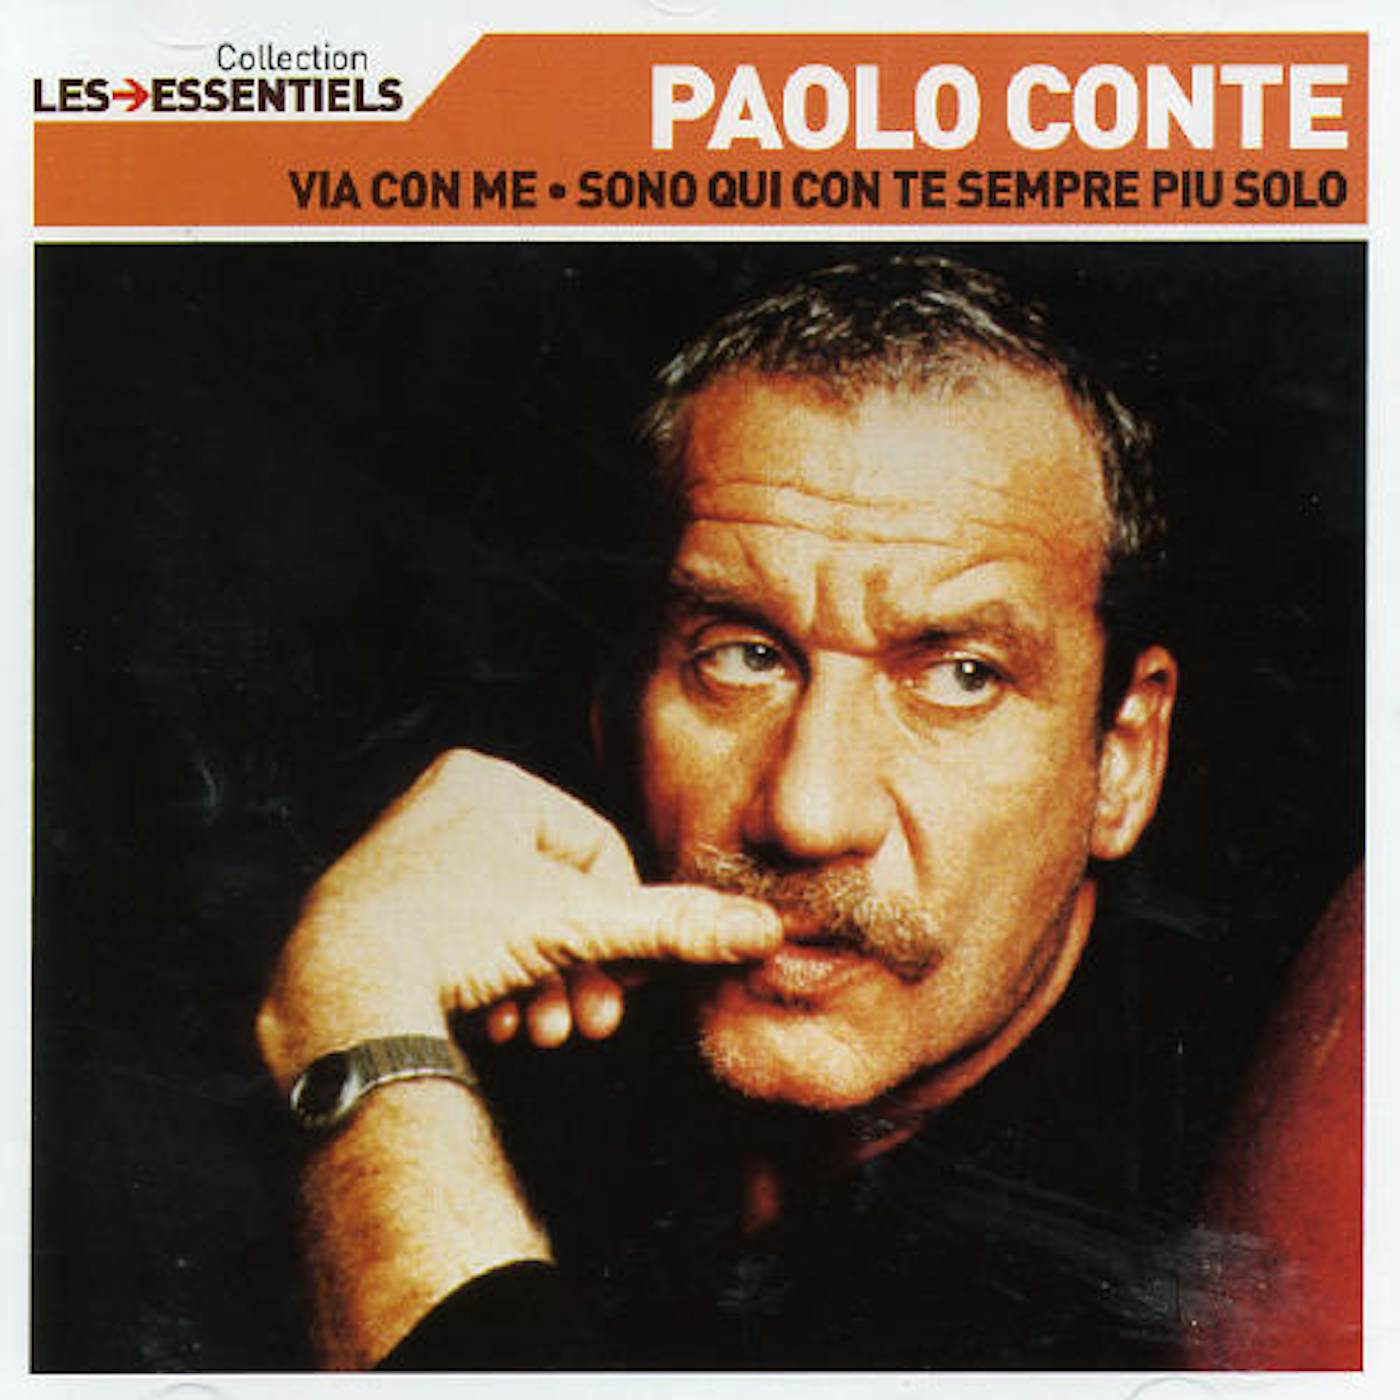 Paolo Conte ESSENTIELS CD